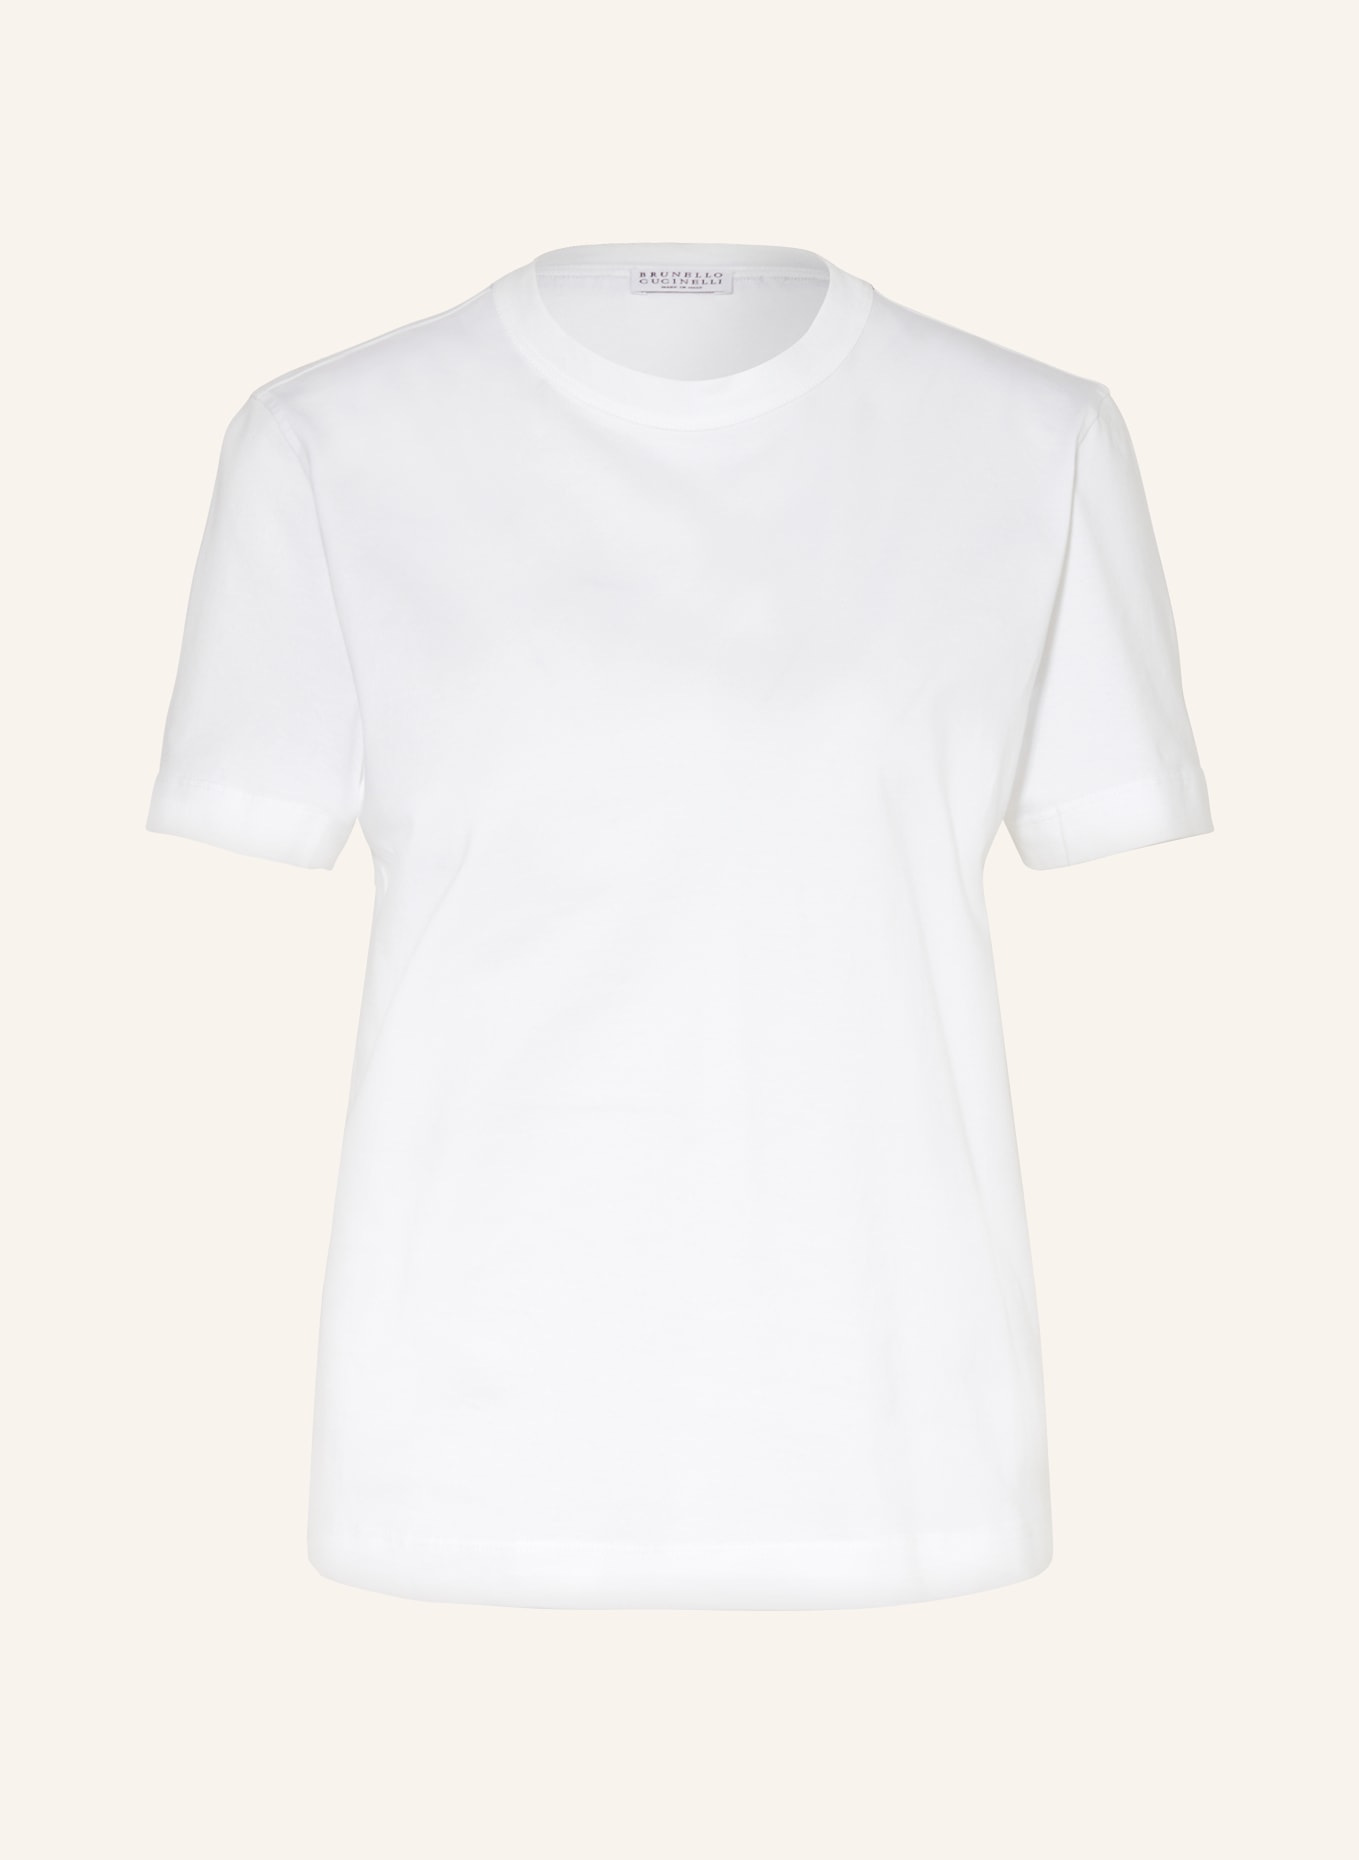 BRUNELLO CUCINELLI T-Shirt mit Schmucksteinen, Farbe: WEISS (Bild 1)